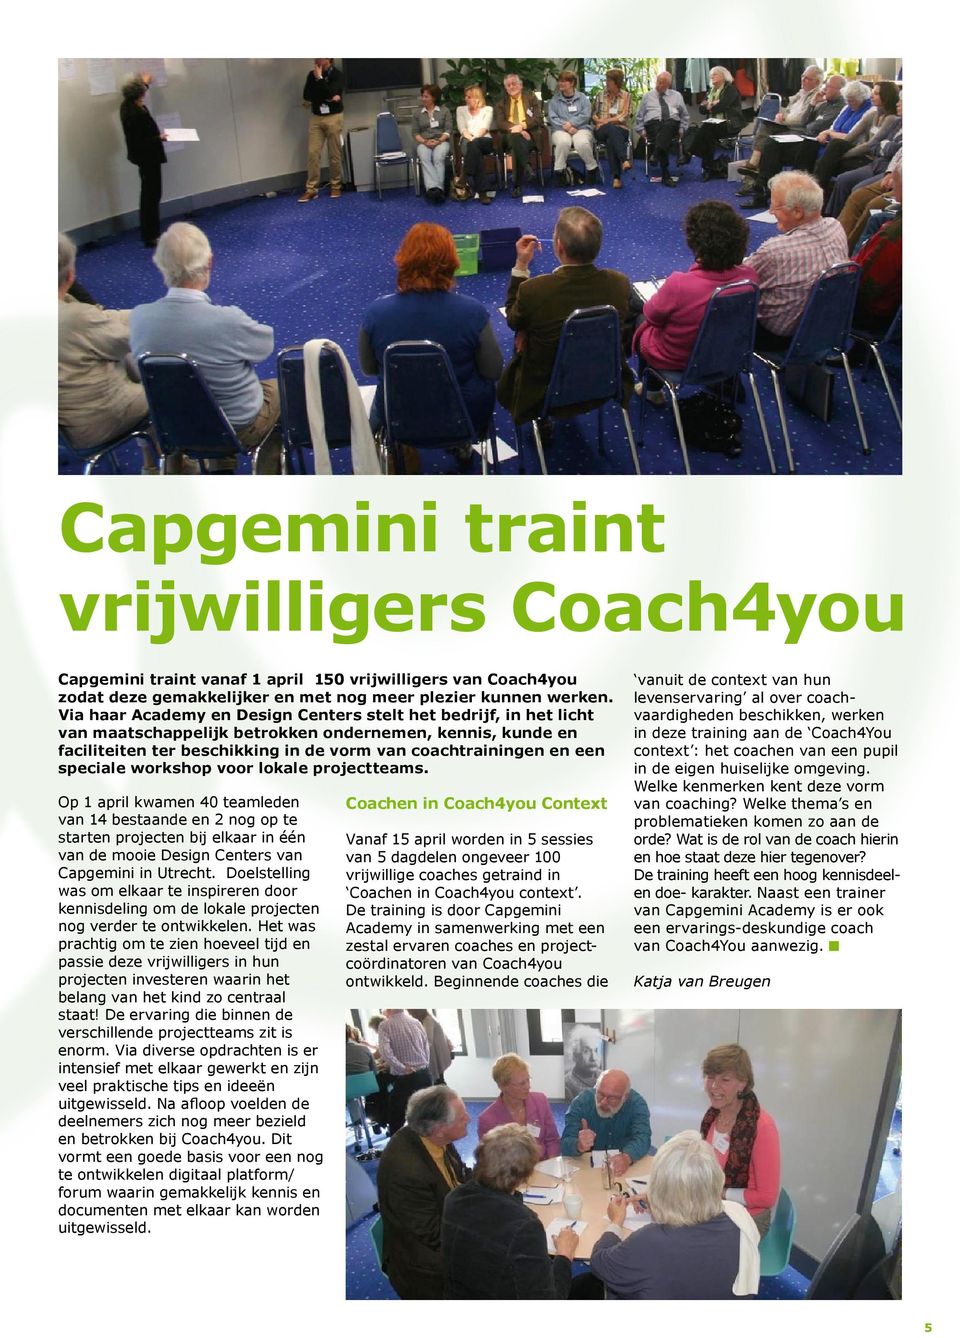 speciale workshop voor lokale projectteams. Op 1 april kwamen 40 teamleden van 14 bestaande en 2 nog op te starten projecten bij elkaar in één van de mooie Design Centers van Capgemini in Utrecht.